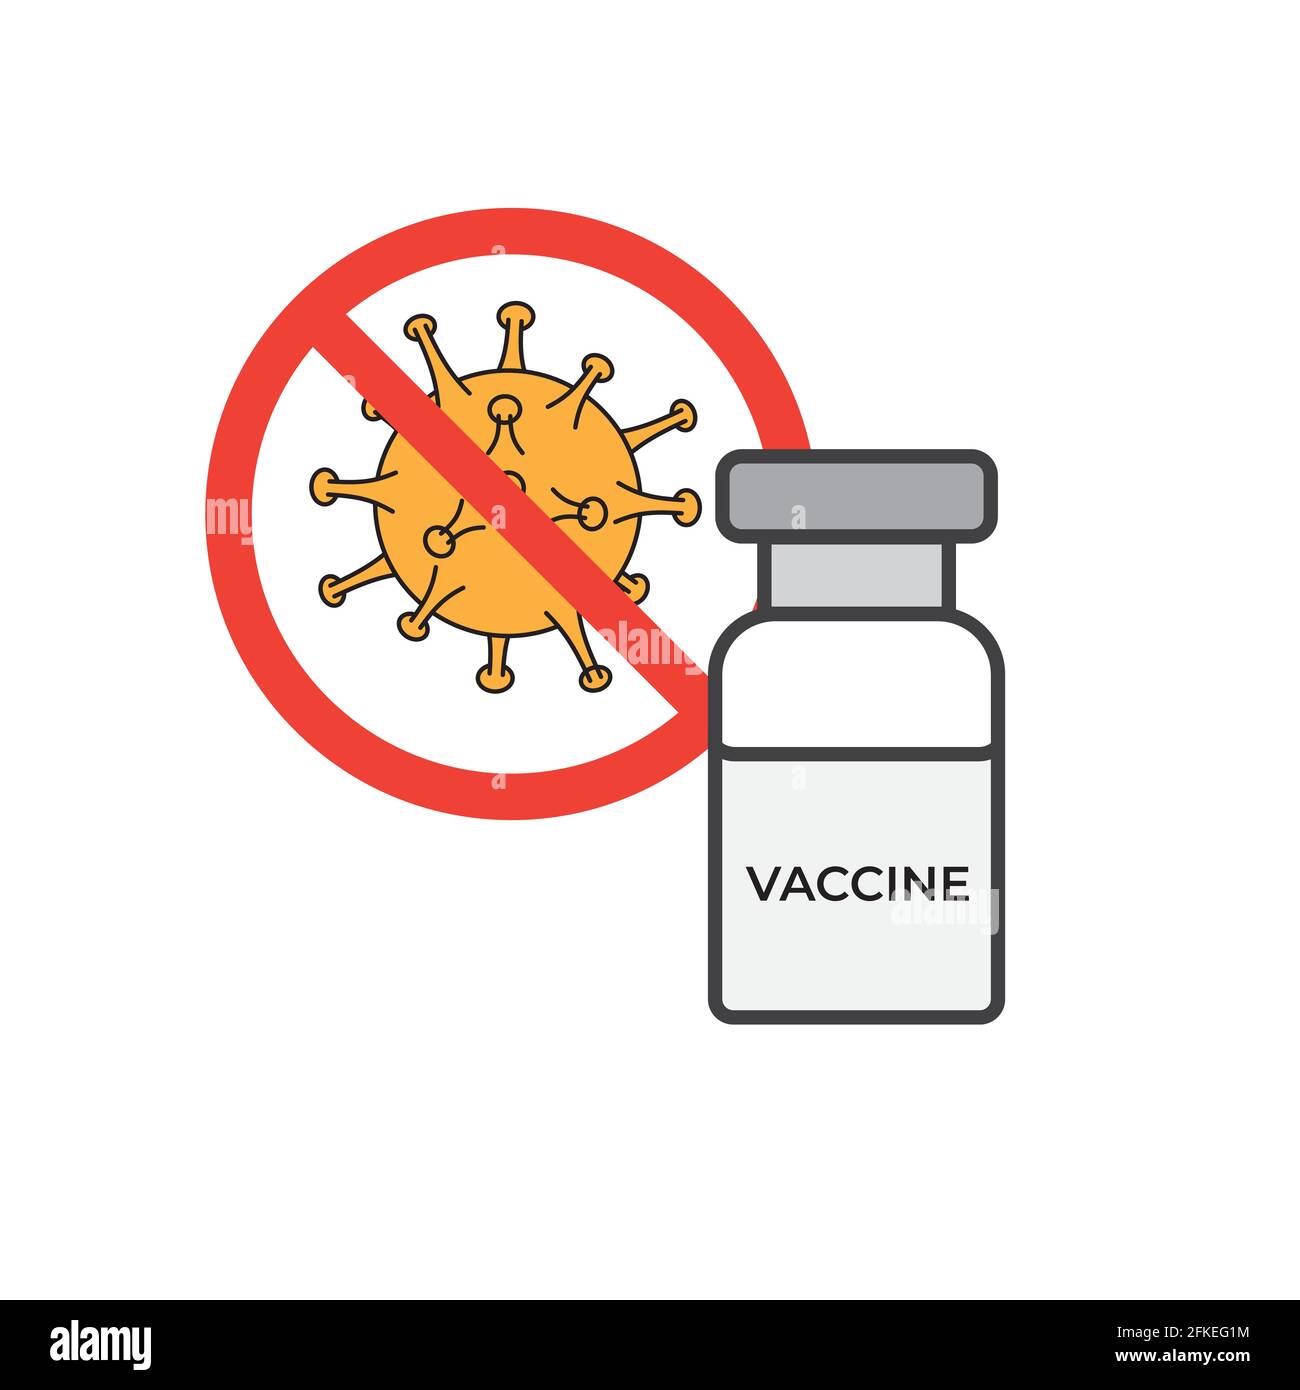 Vaccino con simbolo di stop virus illustrazione vettoriale. Immagine del simbolo di vaccinazione per il trattamento epidemico di cure mediche. Illustrazione Vettoriale